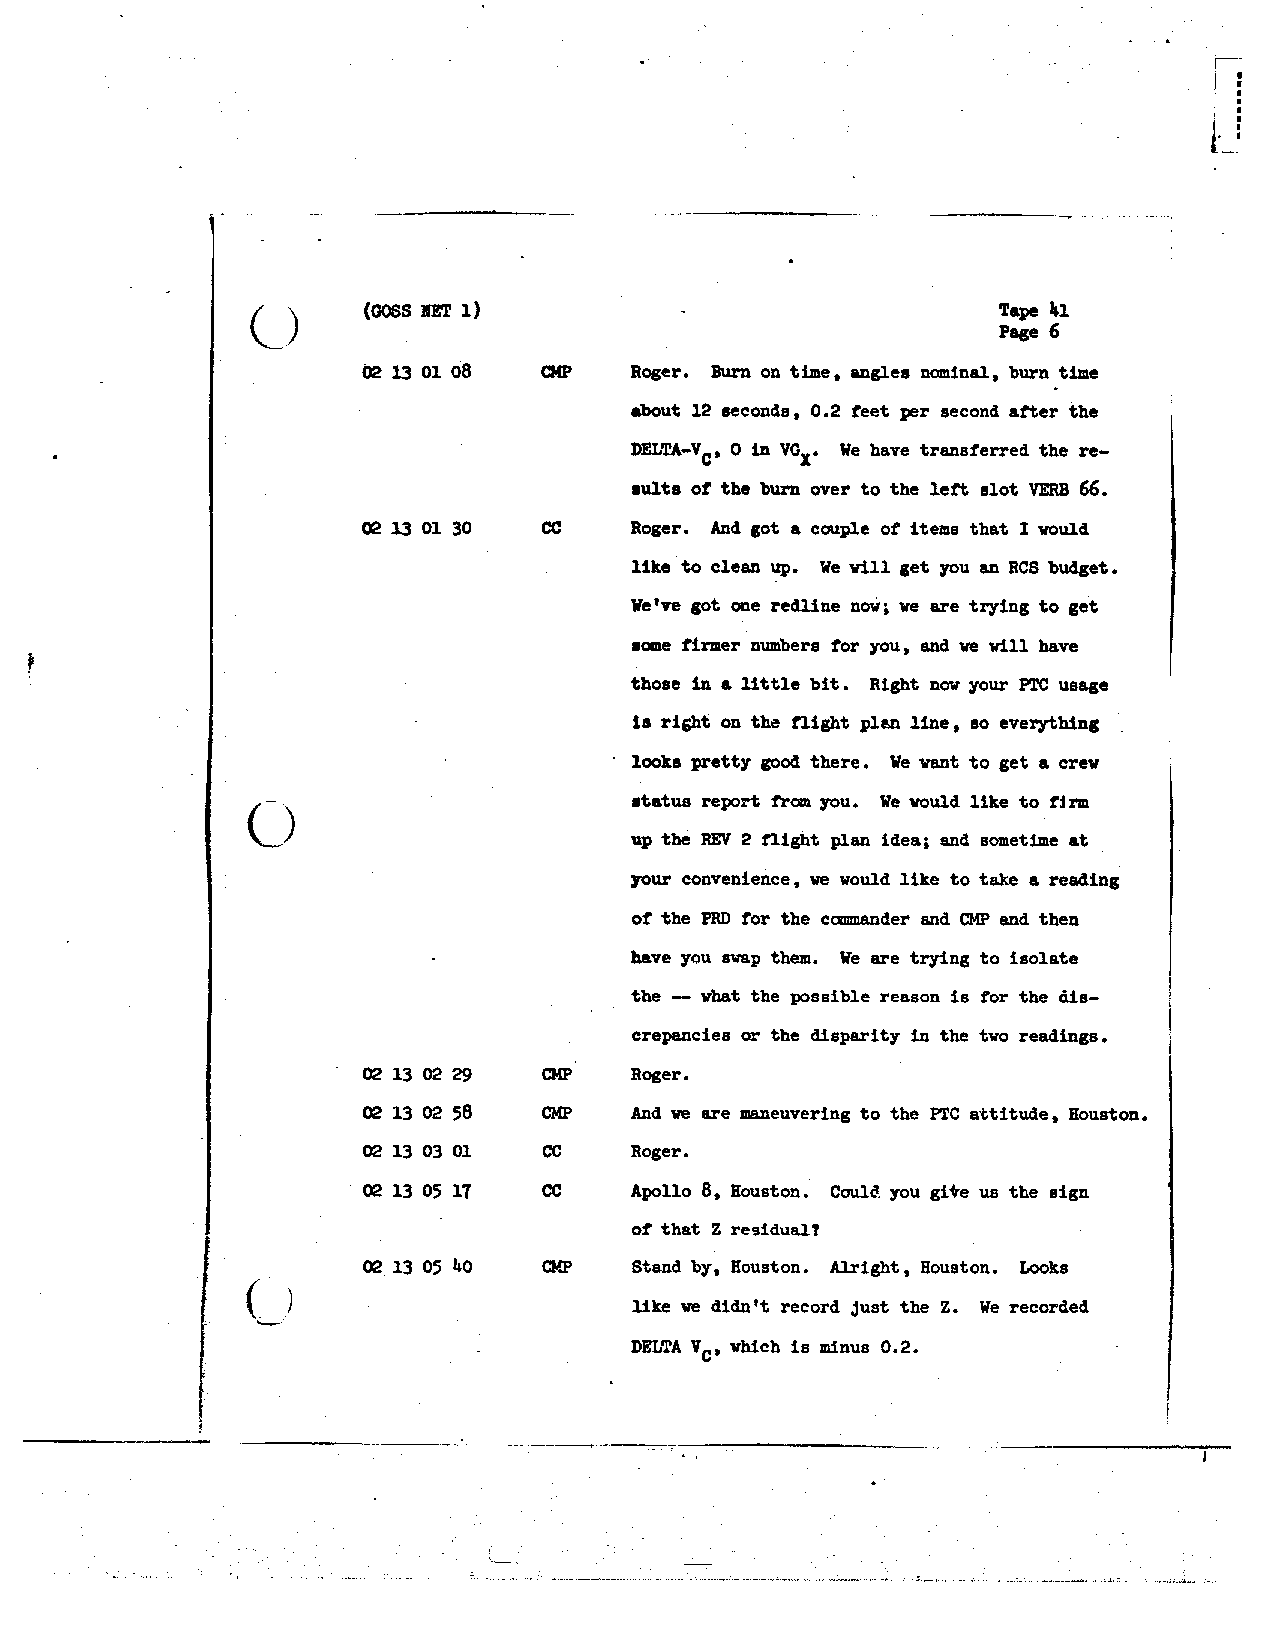 Page 317 of Apollo 8’s original transcript